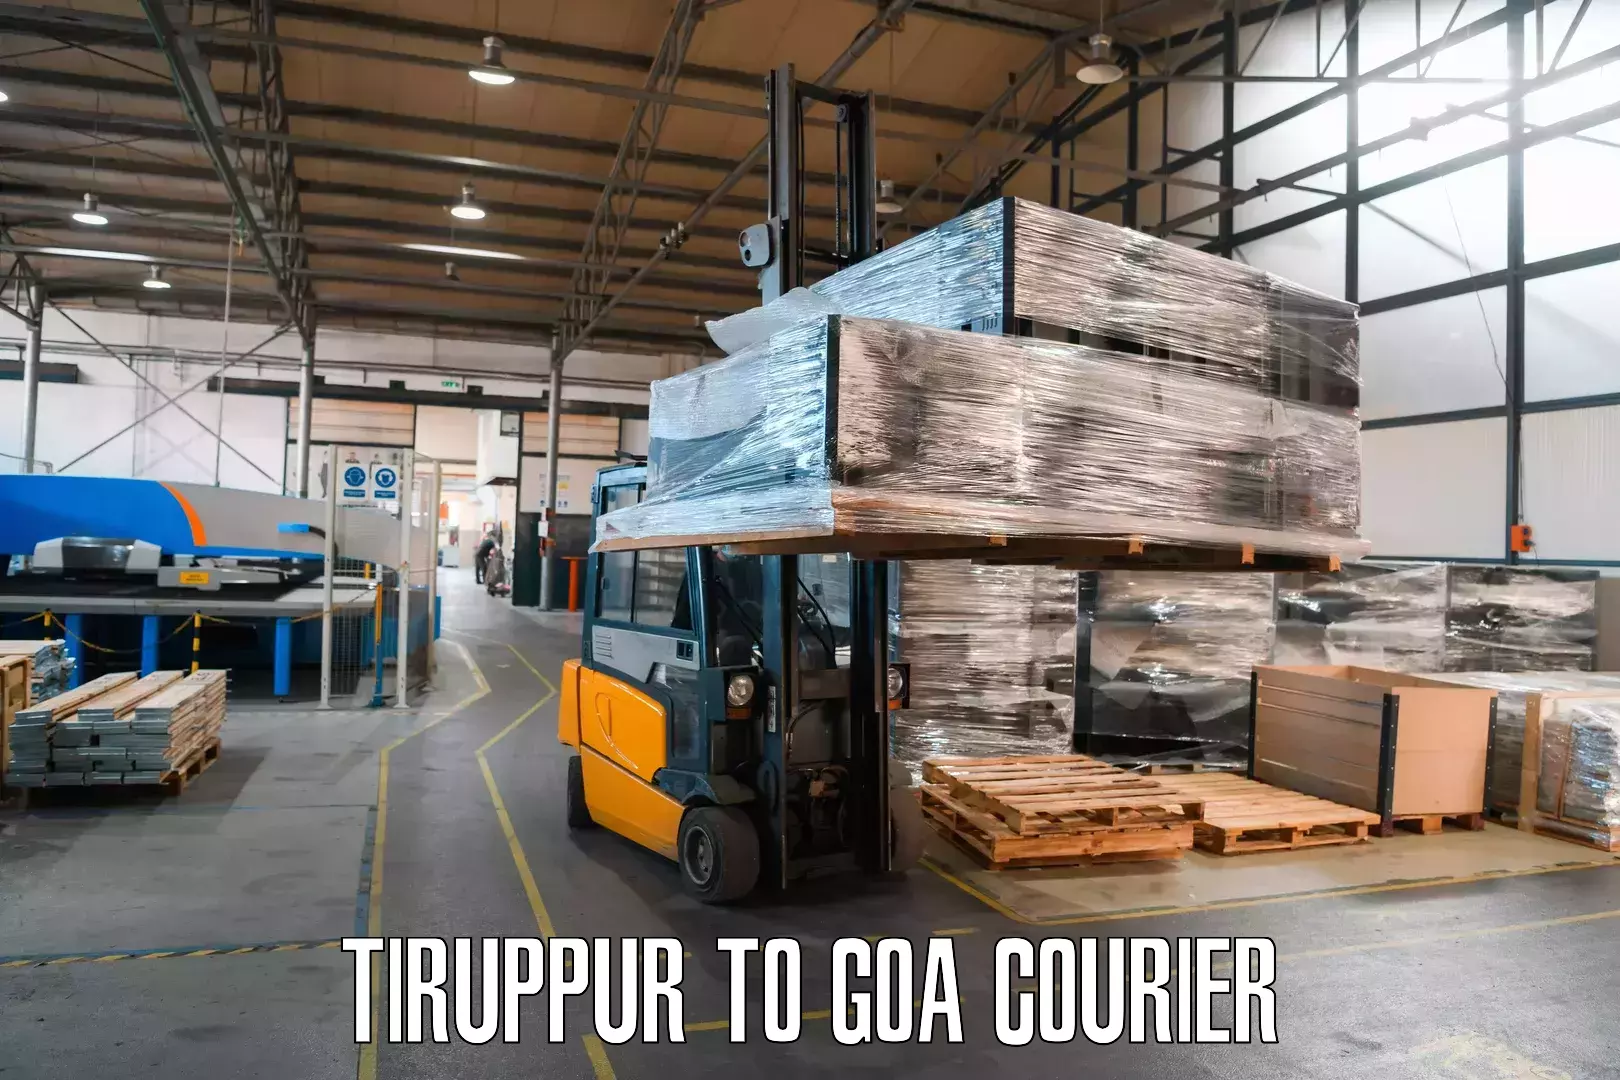 Cargo courier service Tiruppur to Goa